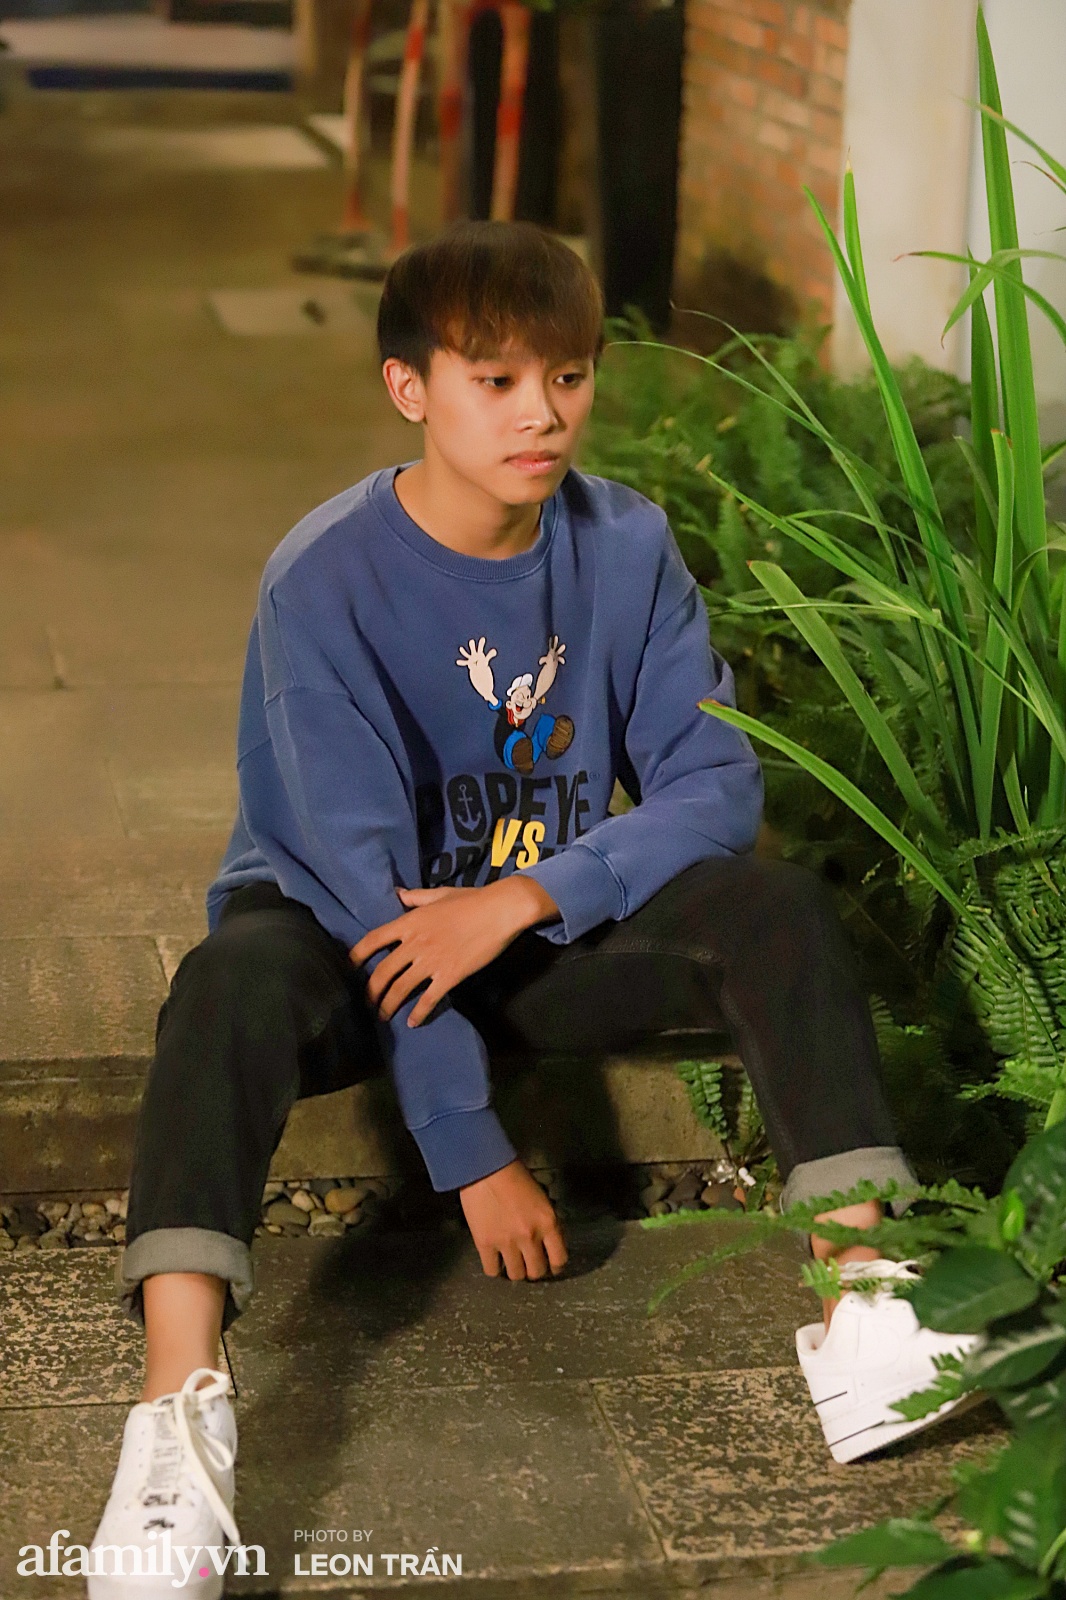 Hồ Văn Cường sau Vietnam Idol Kids: Là chàng trai 18 tuổi, mặc quần áo đẹp, có tài khoản riêng và mong ước mua nhà cho ba mẹ  - Ảnh 8.